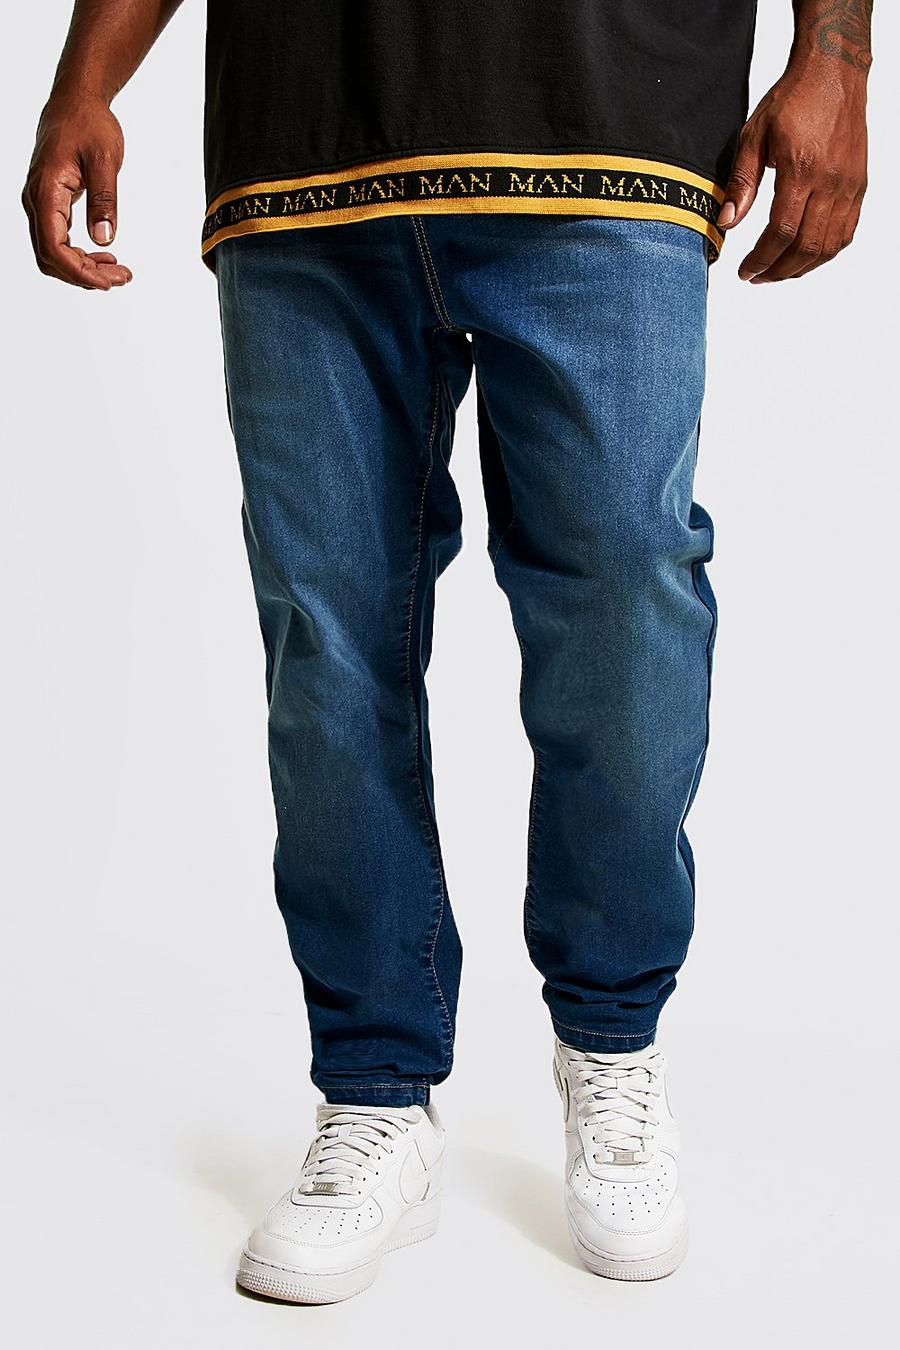 כחול ביניים azul סופר סקיני ג'ינס בשילוב פוליאסטר ממוחזר, מידות גדולות